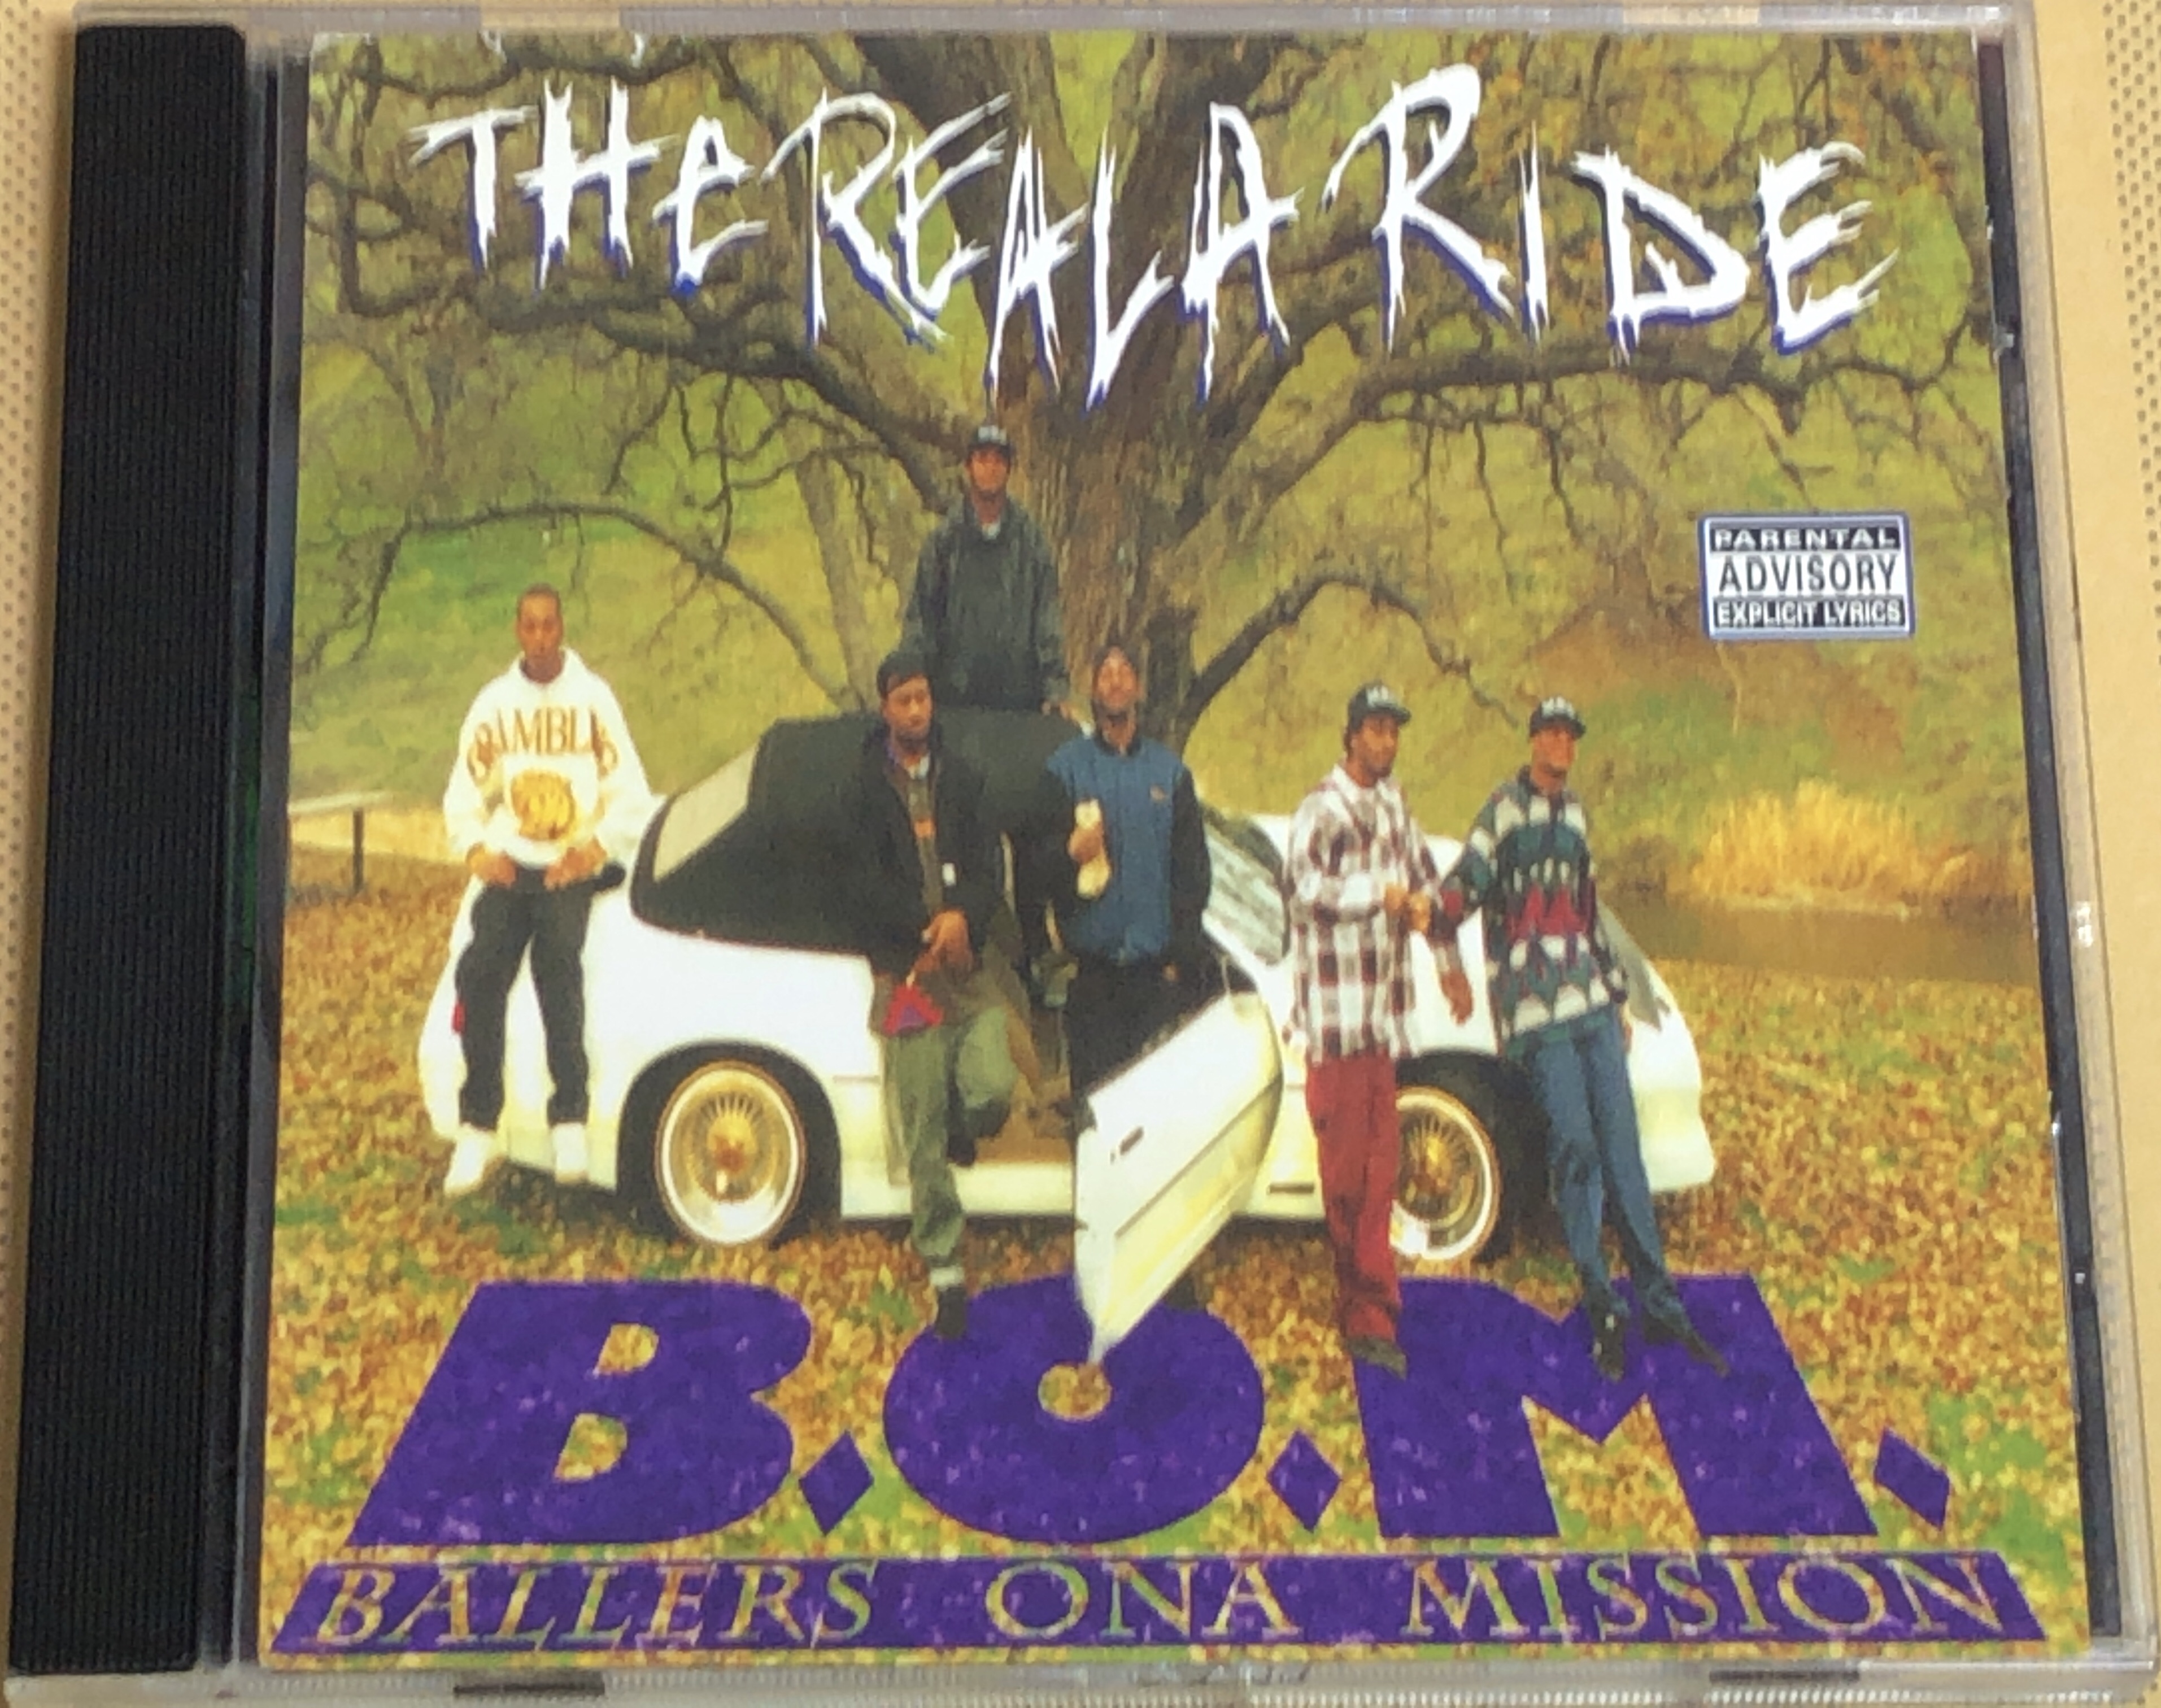 音楽 G-funk B.O.M. (Ballers Ona Mission) / The Reala Ride - NI6